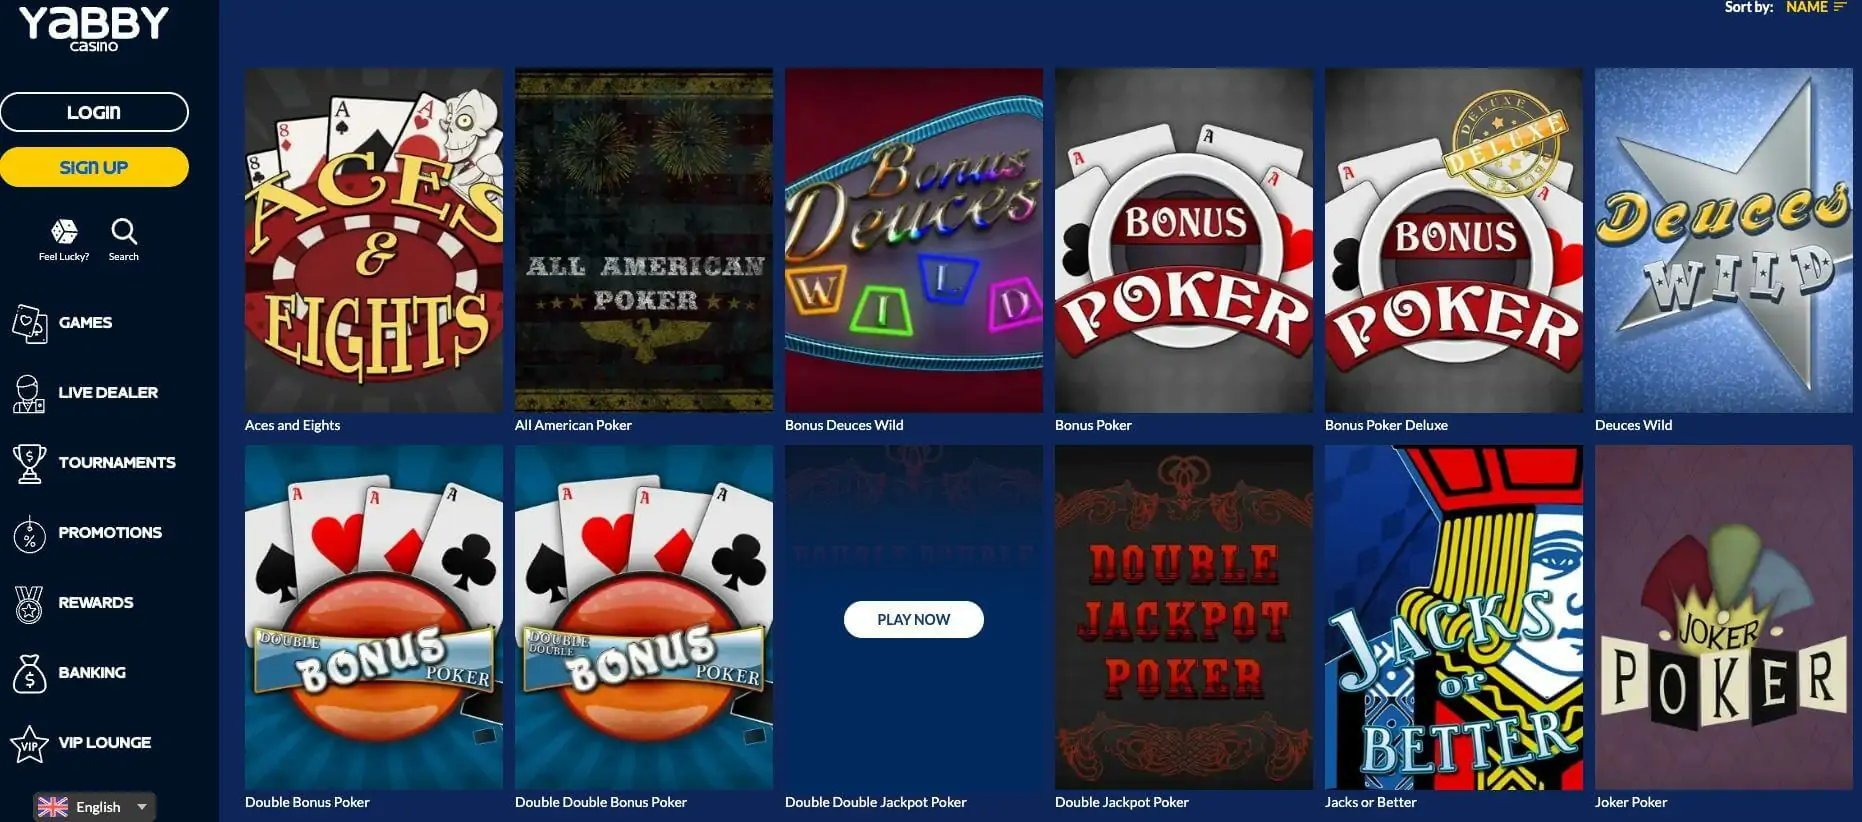 Yabby casino video poker